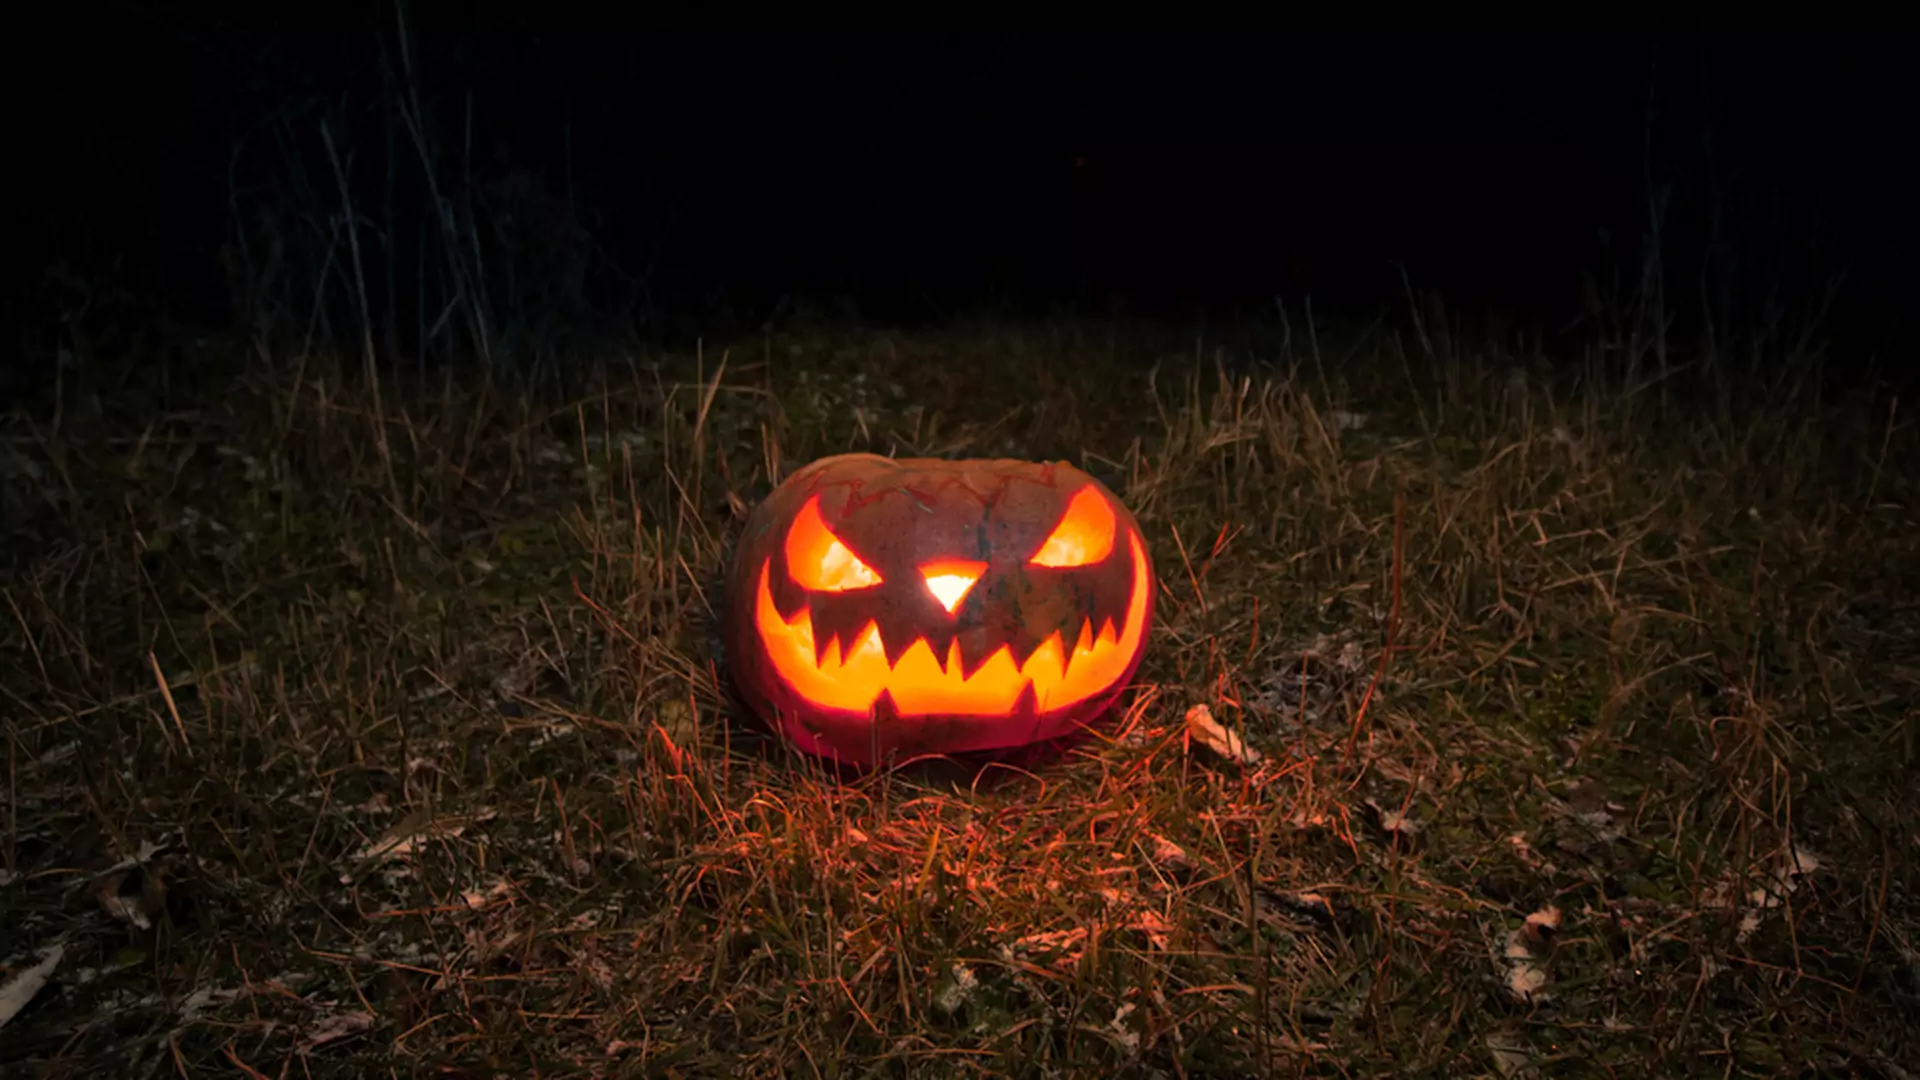 Ksiądz zniszczył dzieciom dynie na Halloween. "Były symbolem satanistycznego święta"